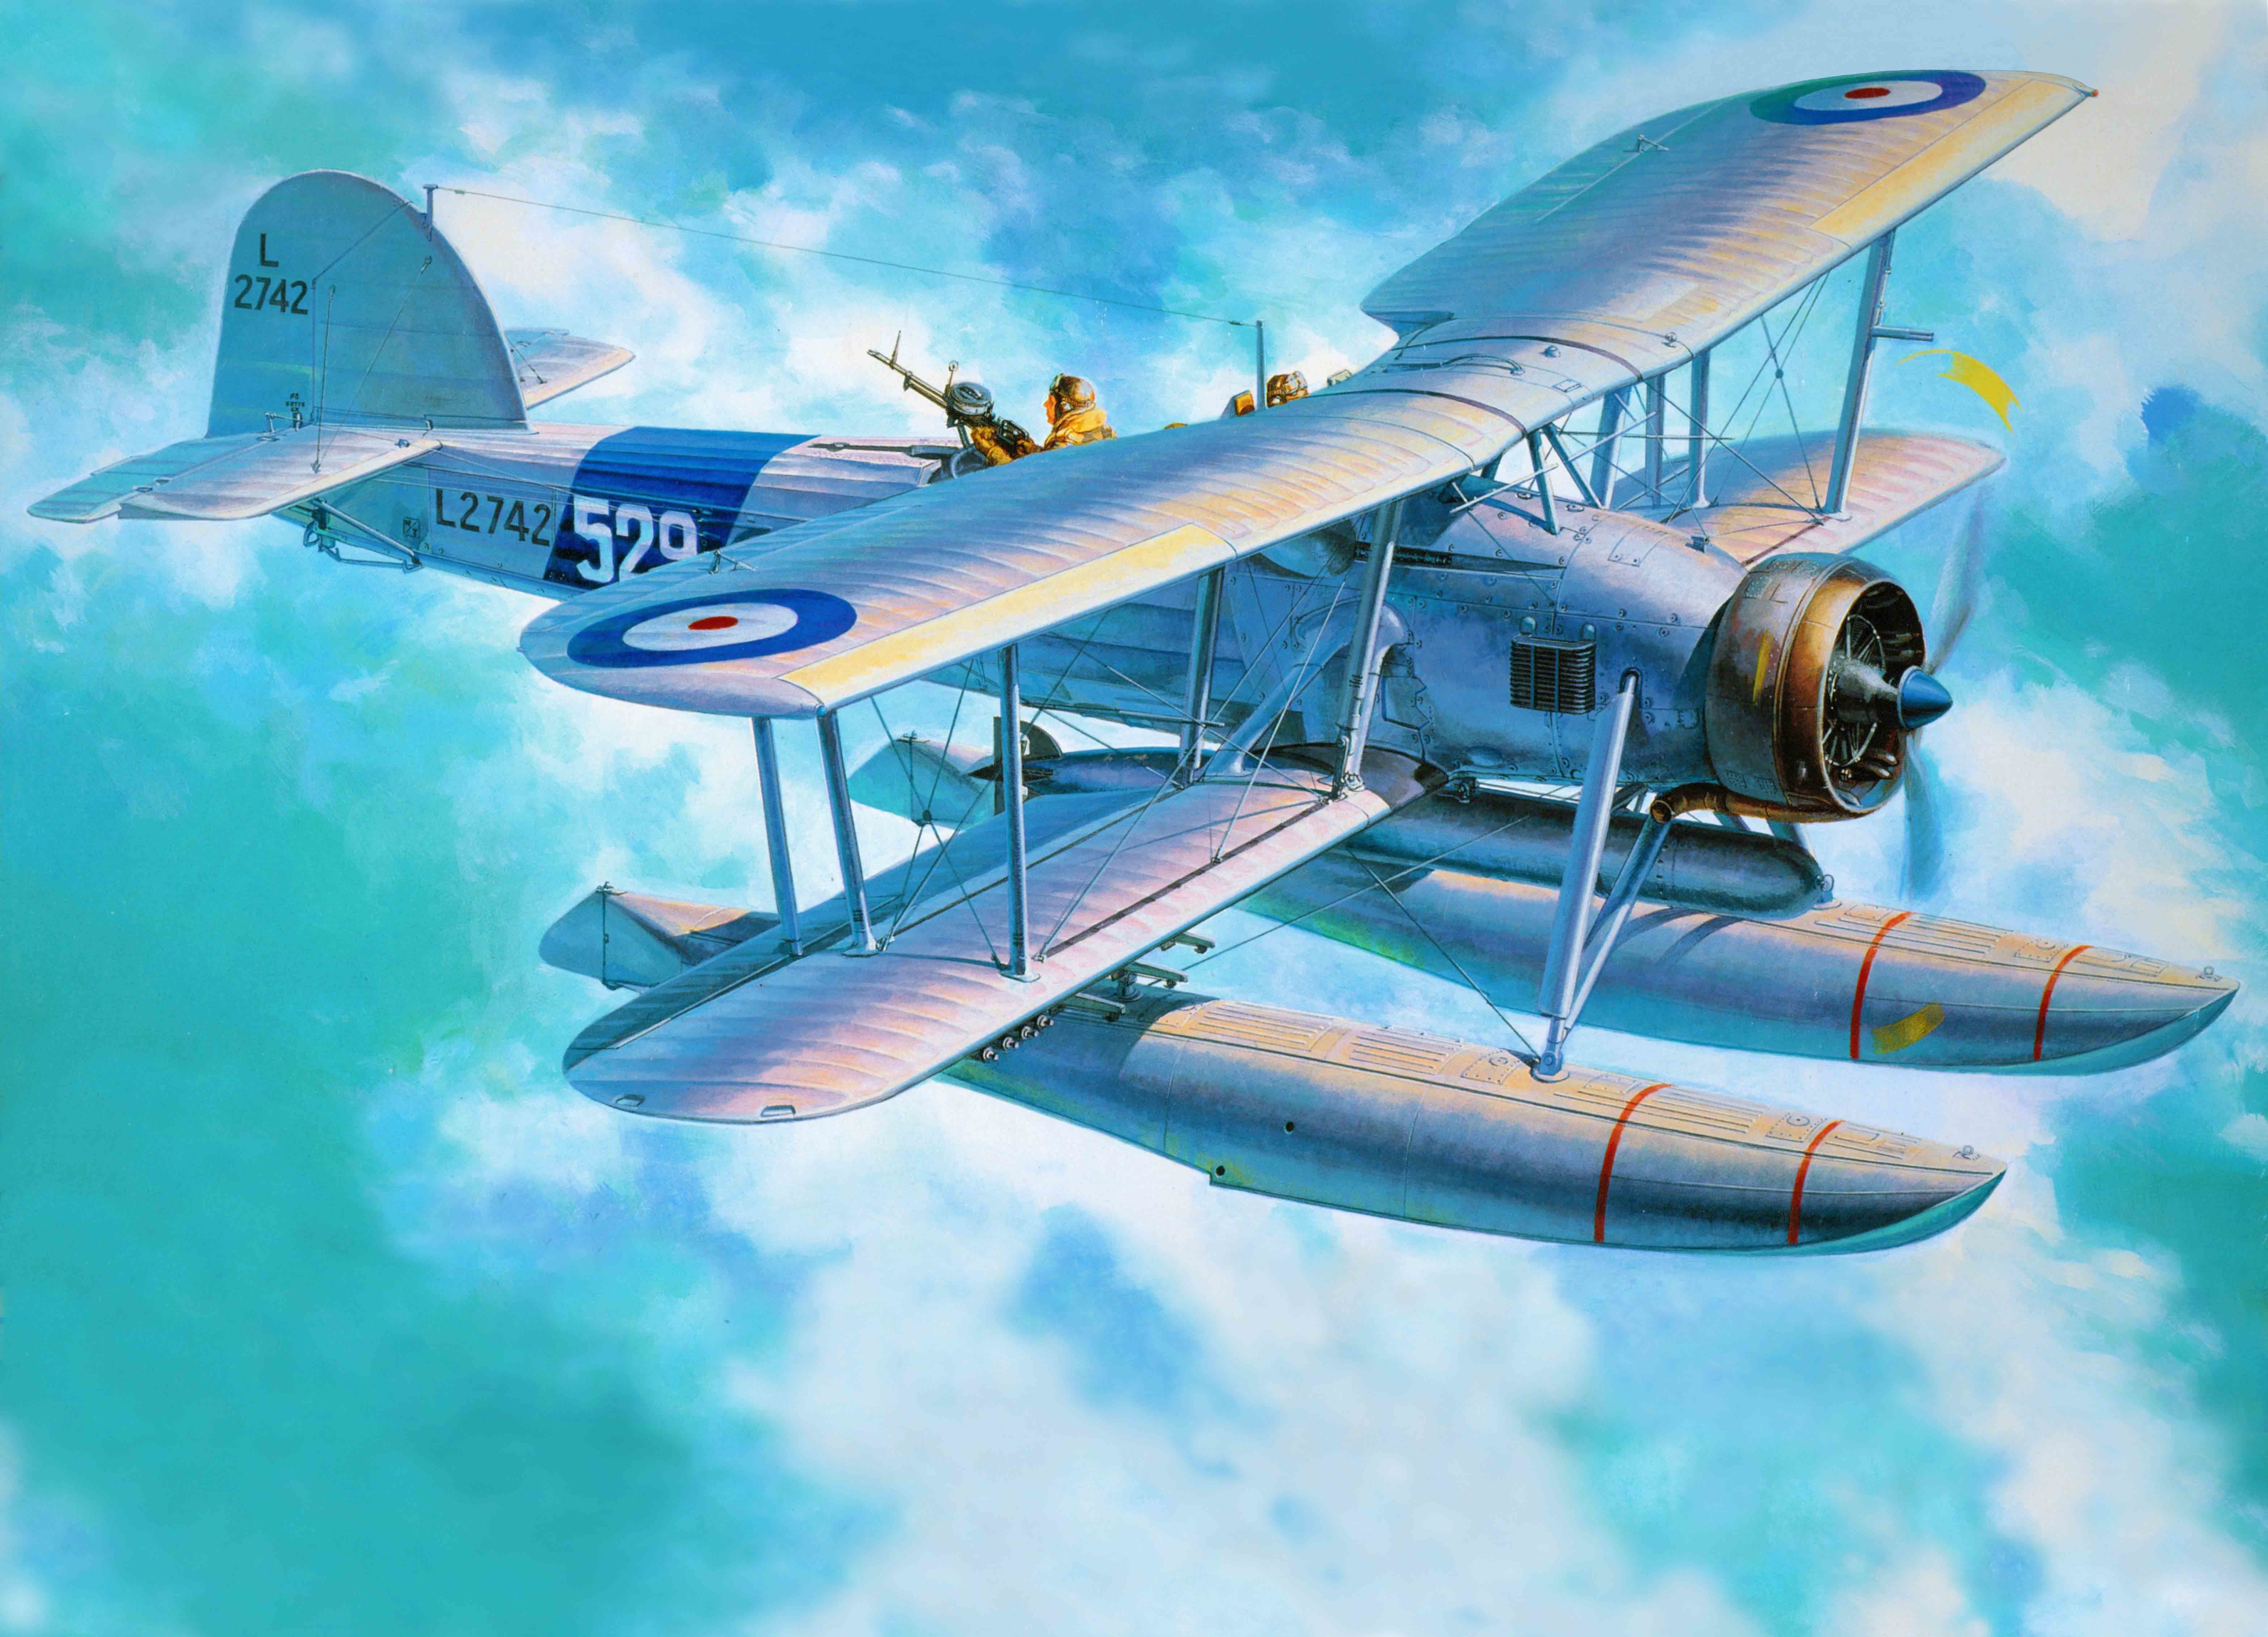 biplane, World War II, Airplane, Aircraft, War, Torpedo, Military, Military Aircraft, Royal Navy Wallpaper